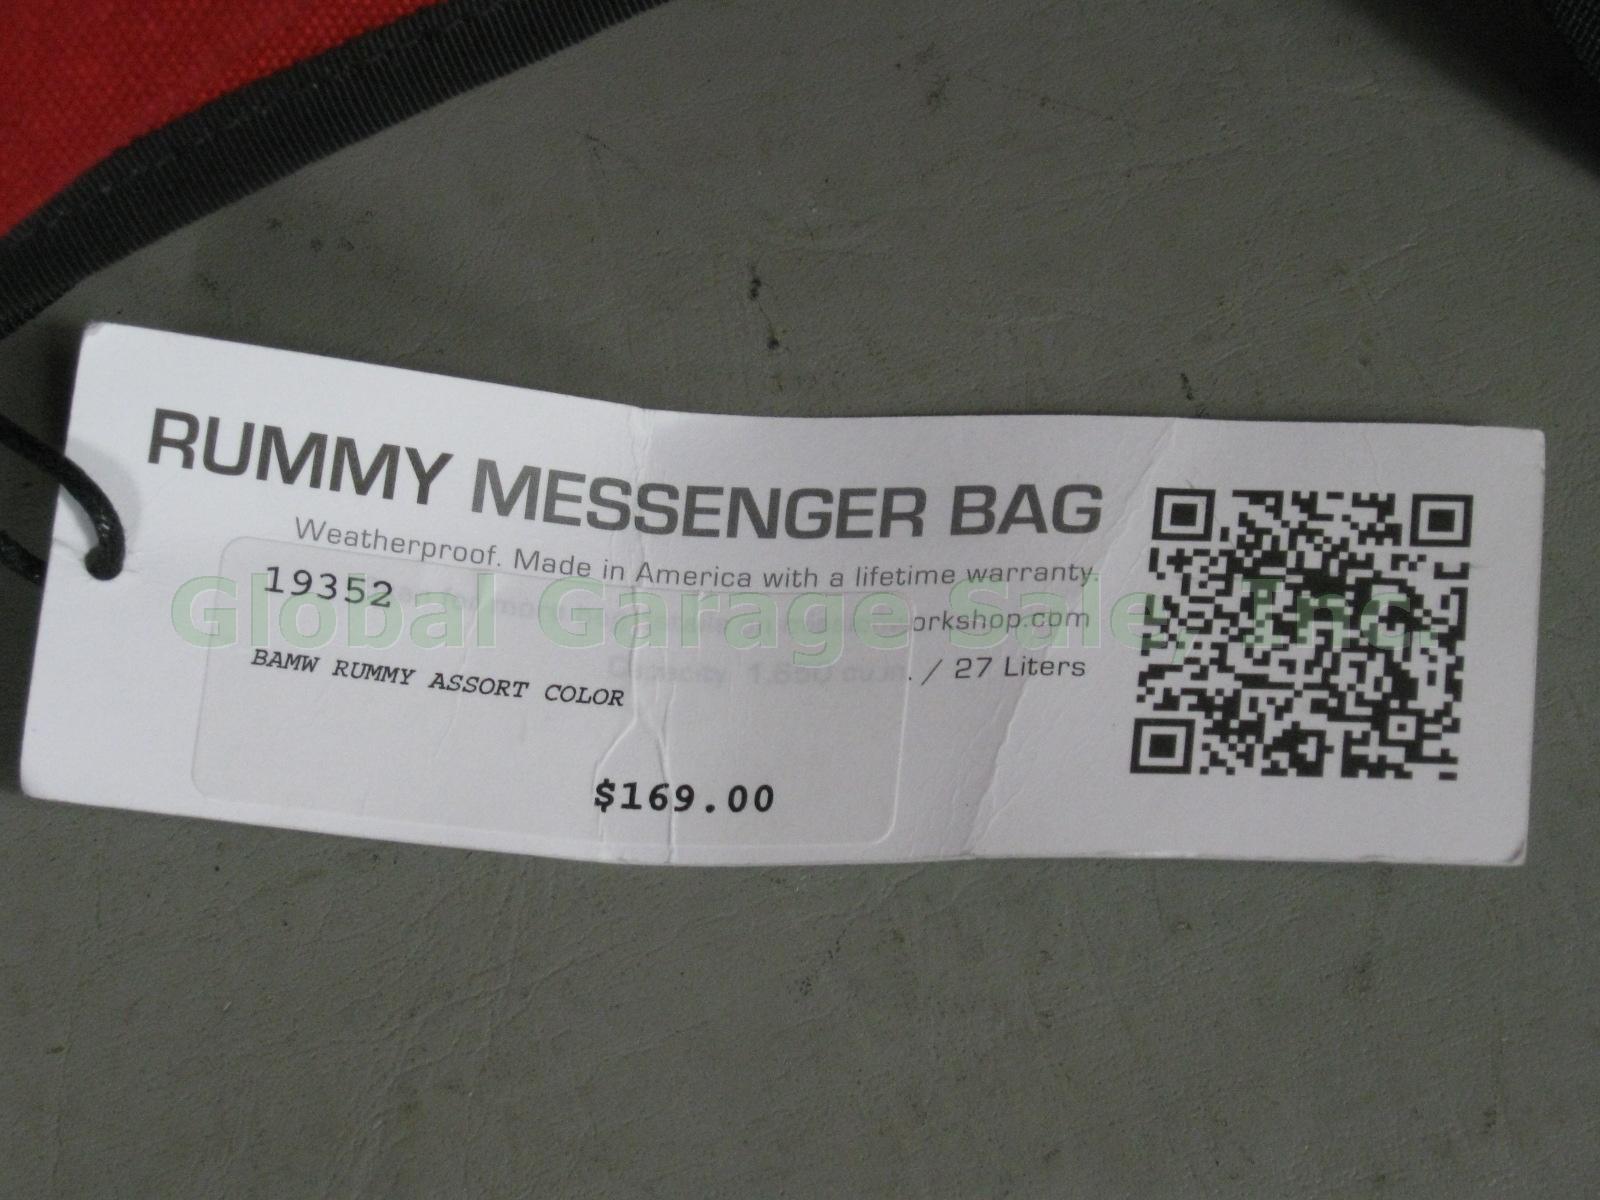 NWT Mission Workshop Red Rummy Messenger Laptop Shoulder Bag Weatherproof NR! 10